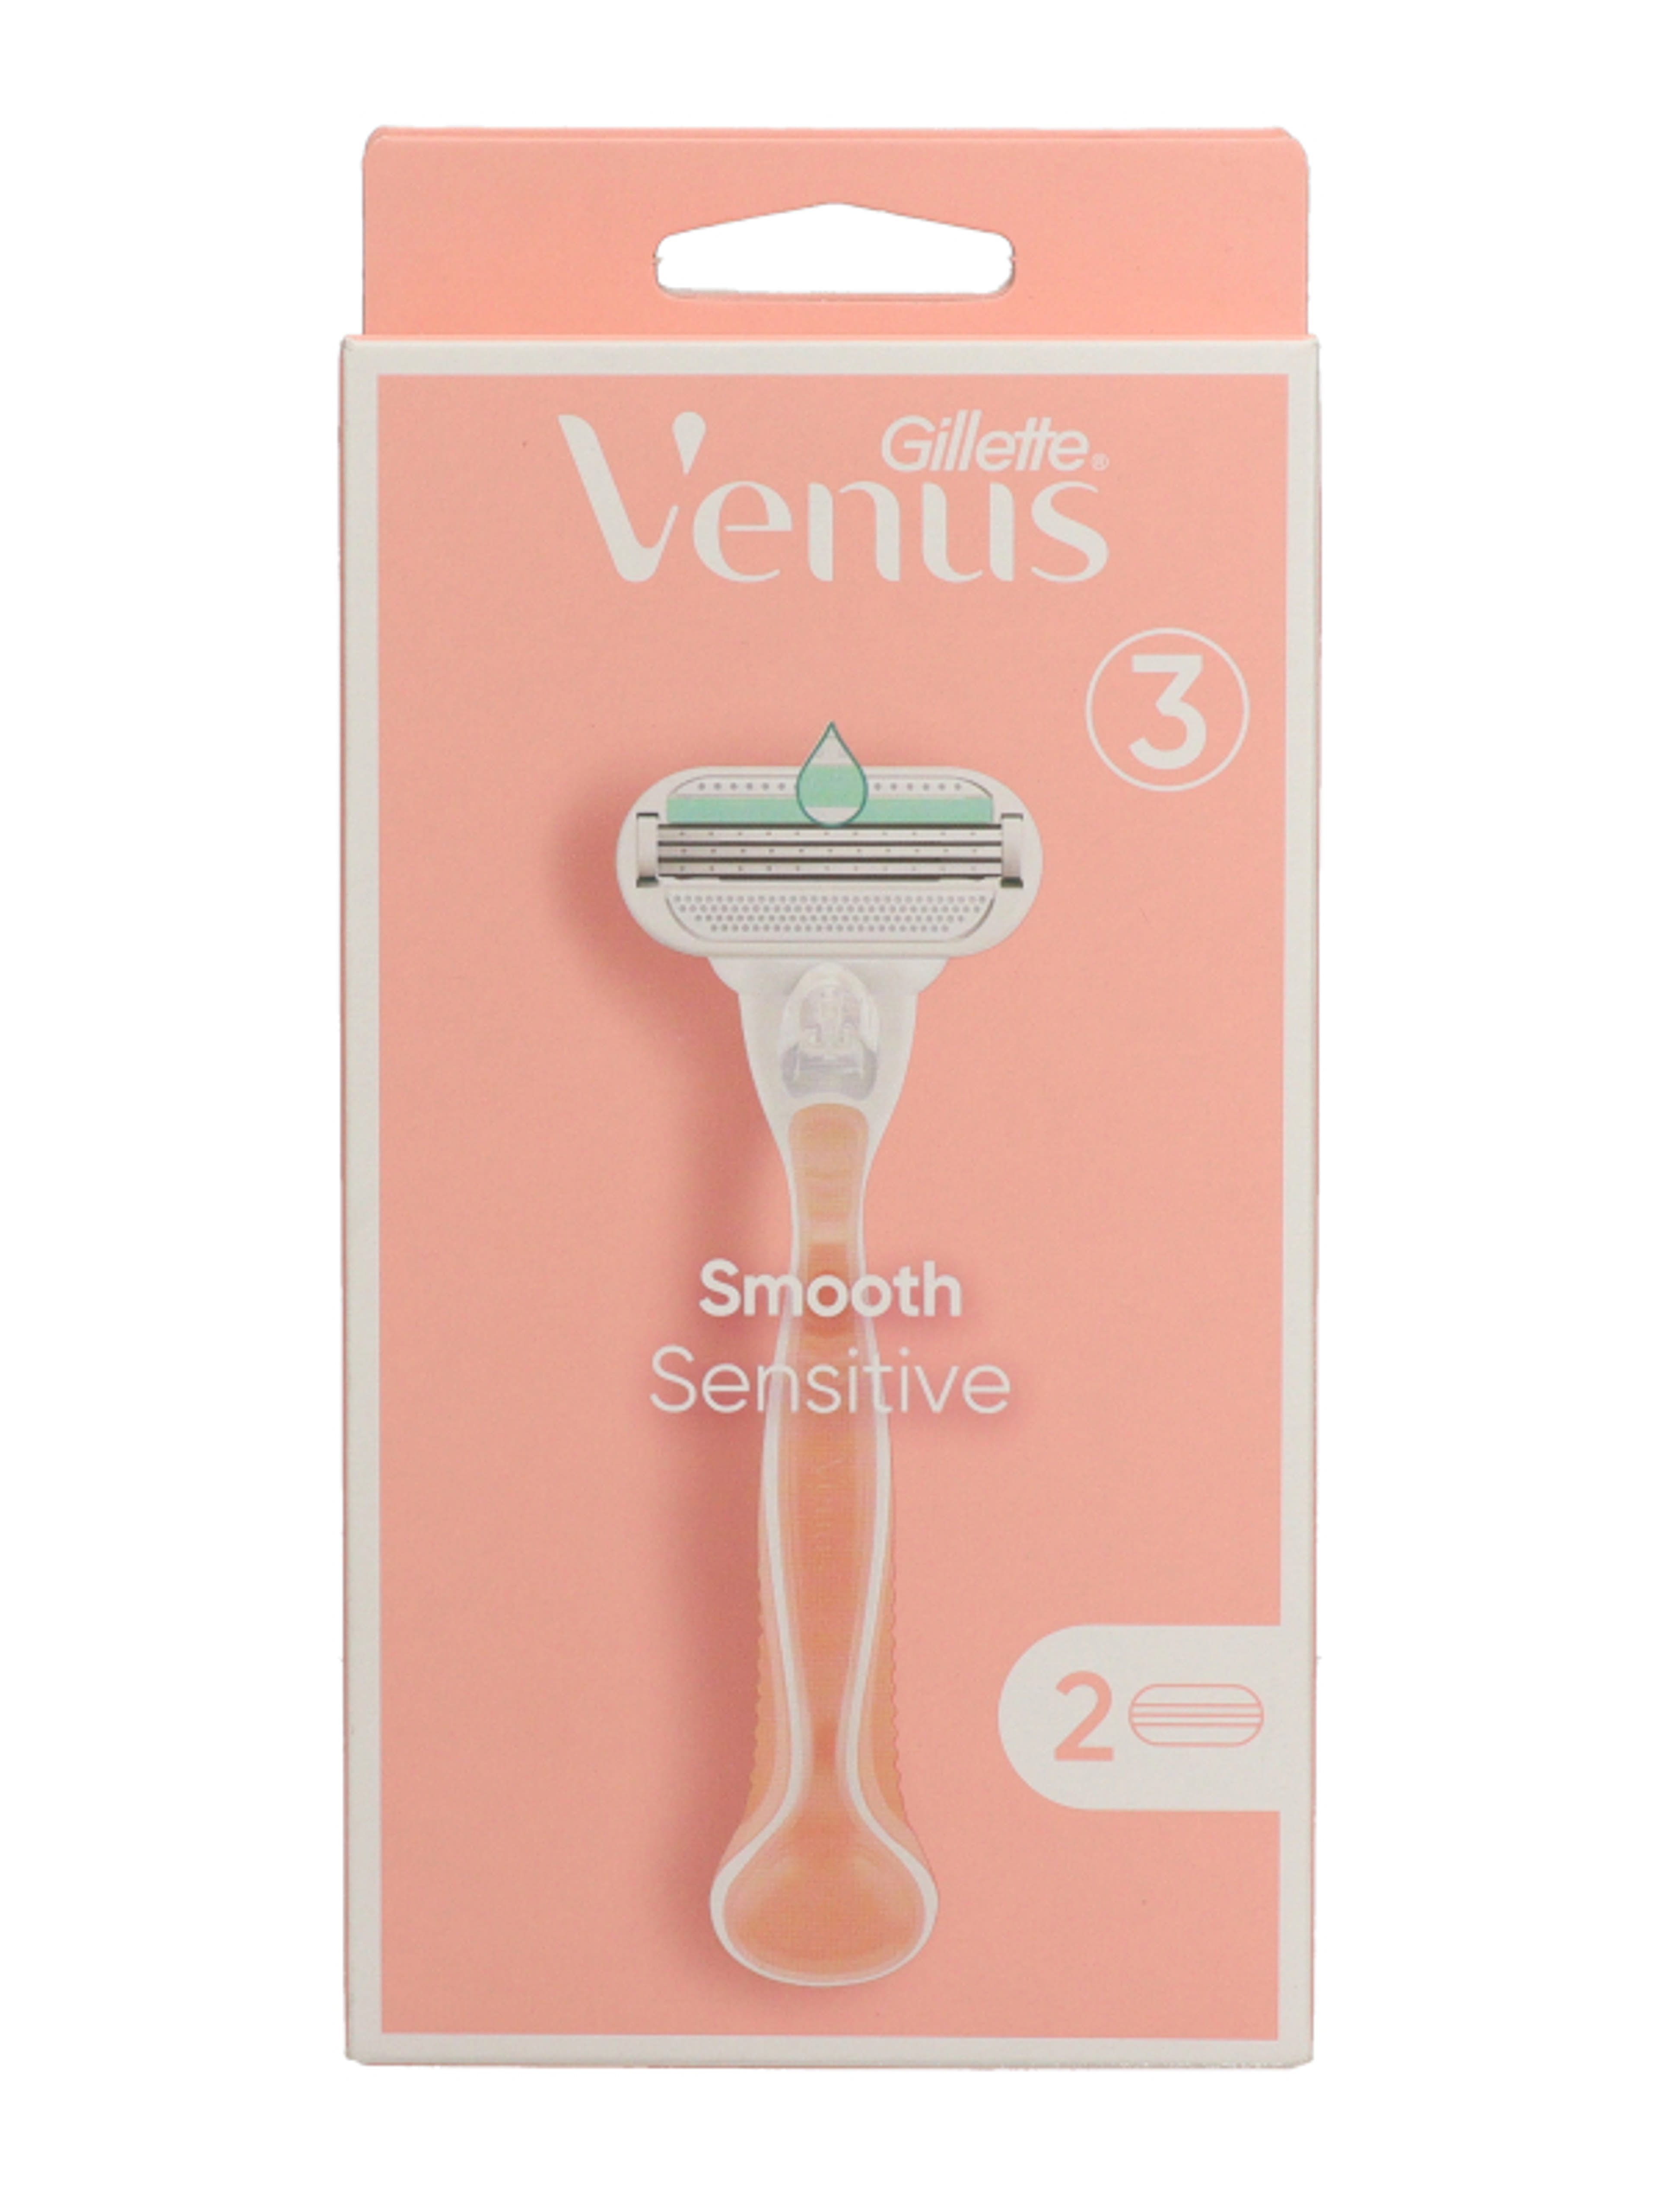 Gillette Venus Smooth Sensitive borotvakészülék 3 pengés + 2 borotvabetét - 1 db-8